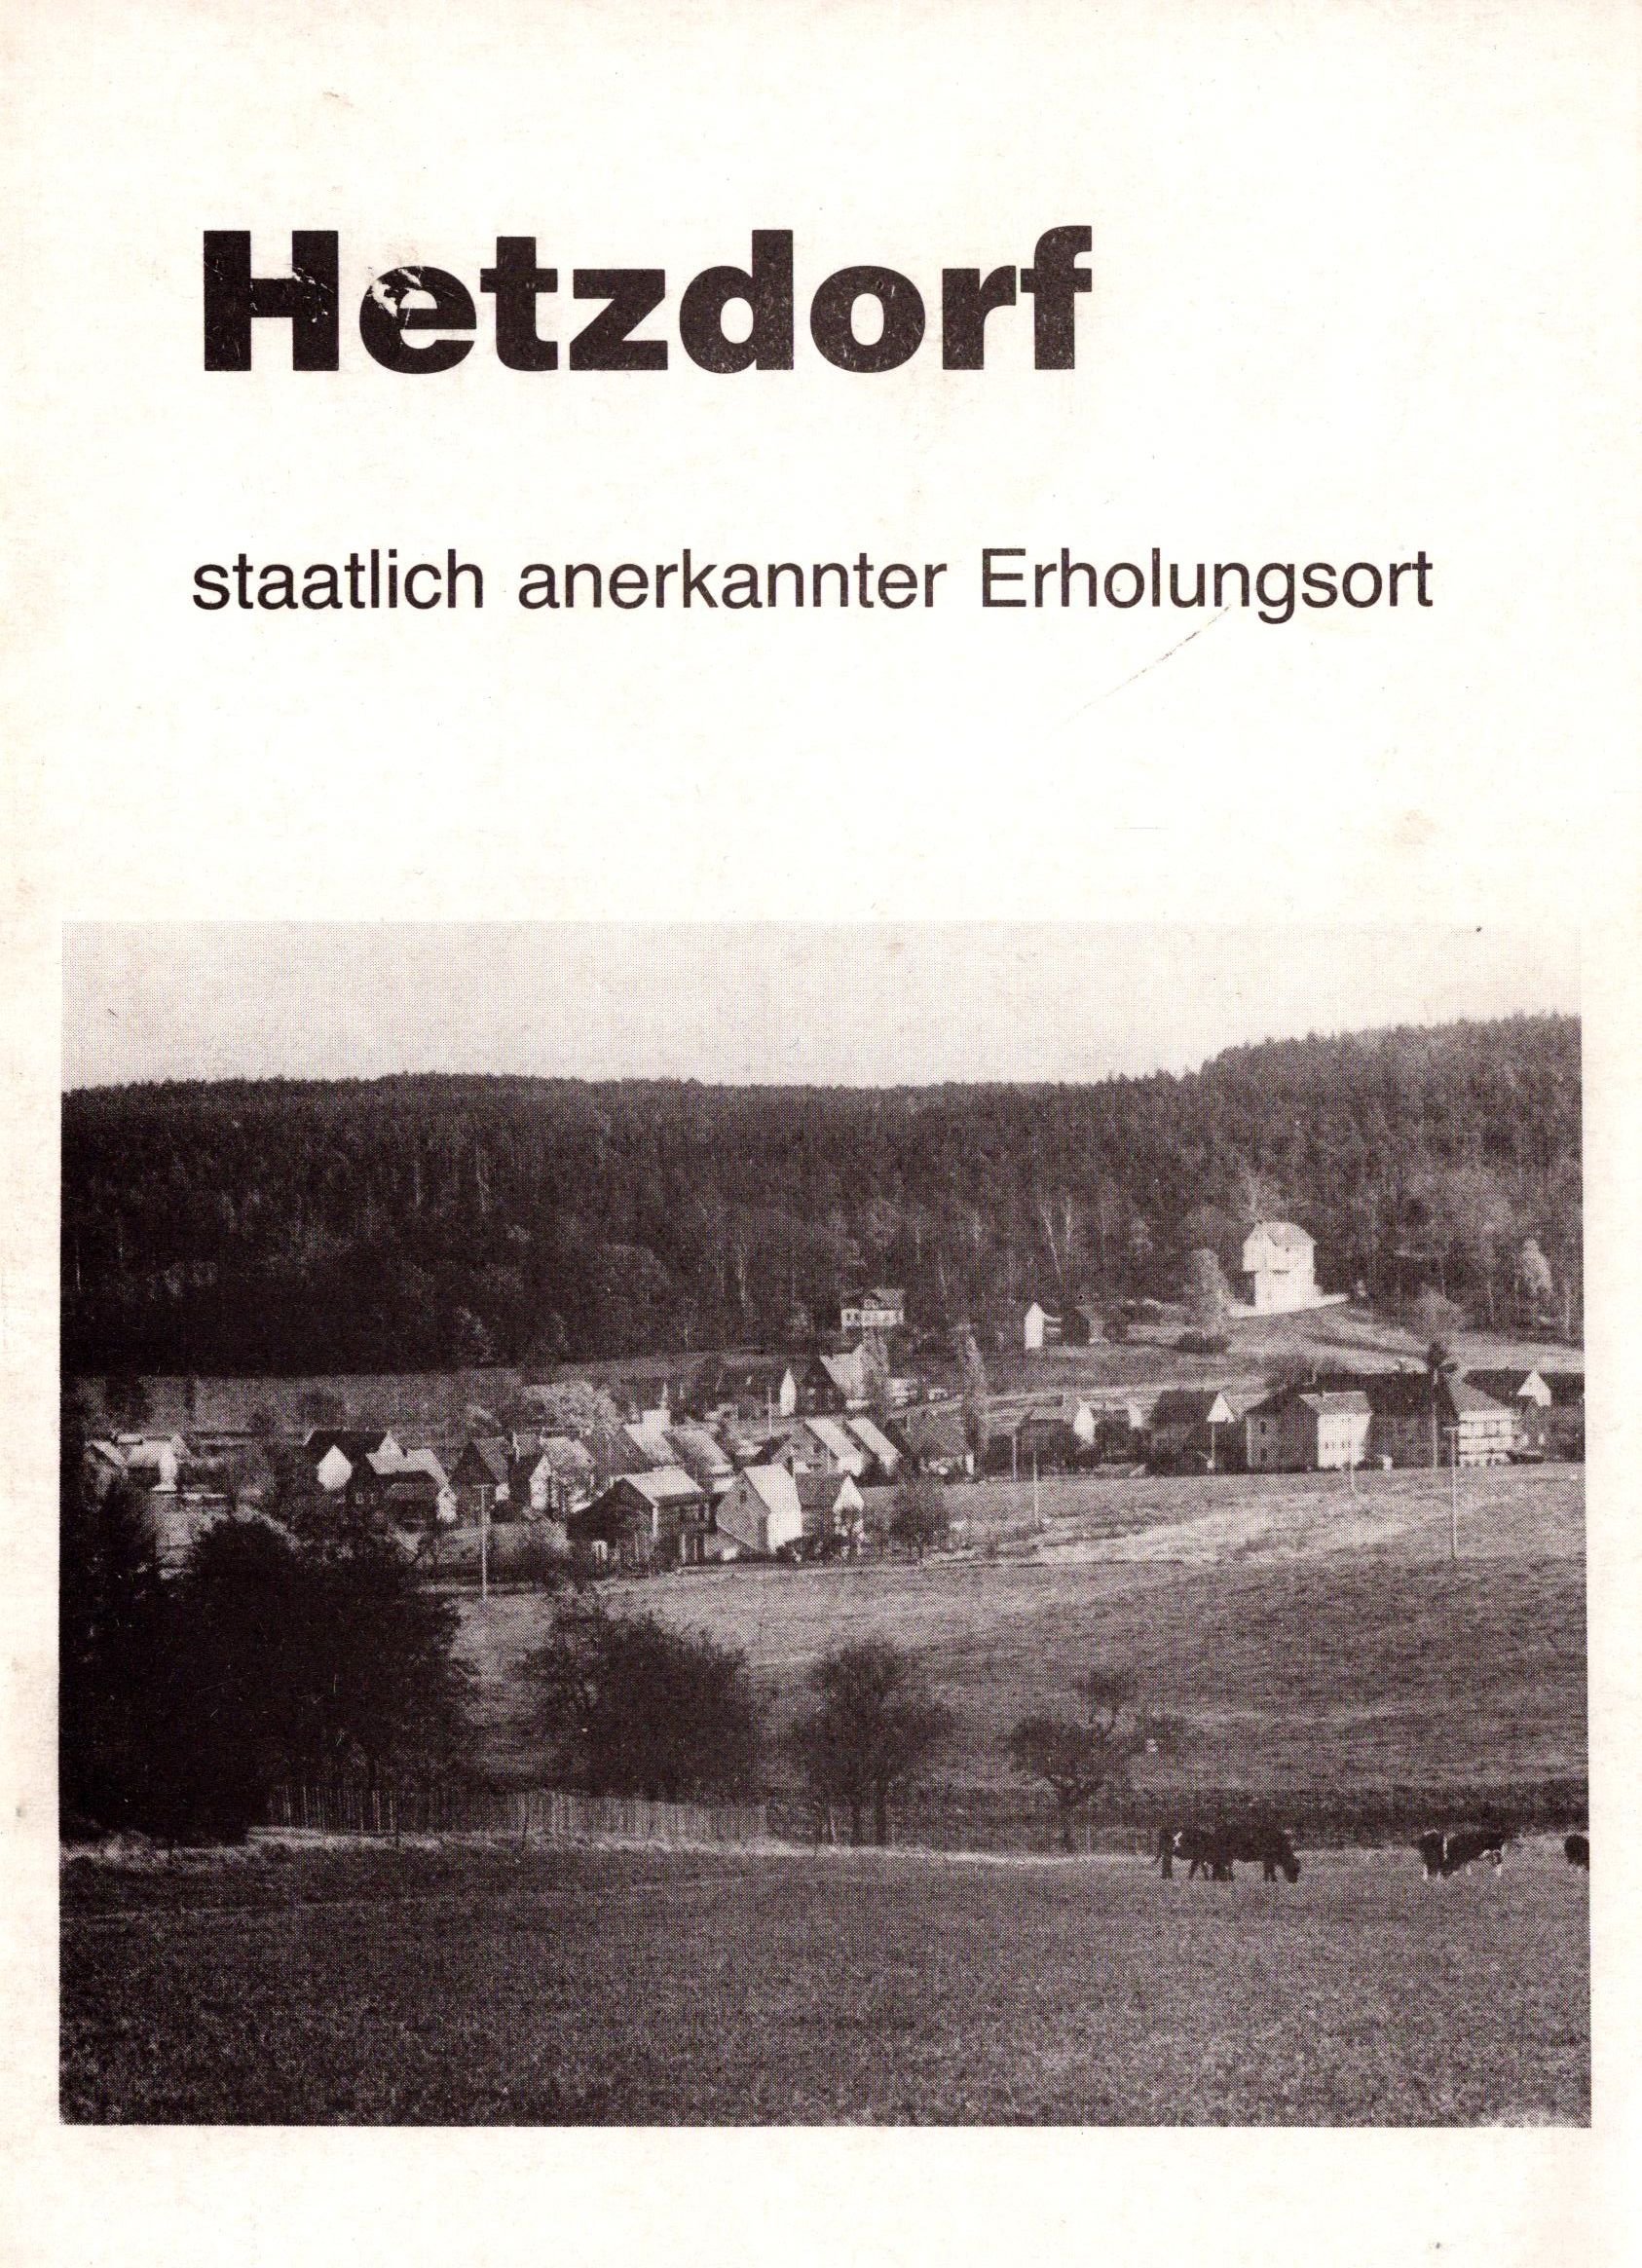 Hetzdorf, staatlich anerkannter Erholungsort (Archiv SAXONIA-FREIBERG-STIFTUNG CC BY-NC-SA)